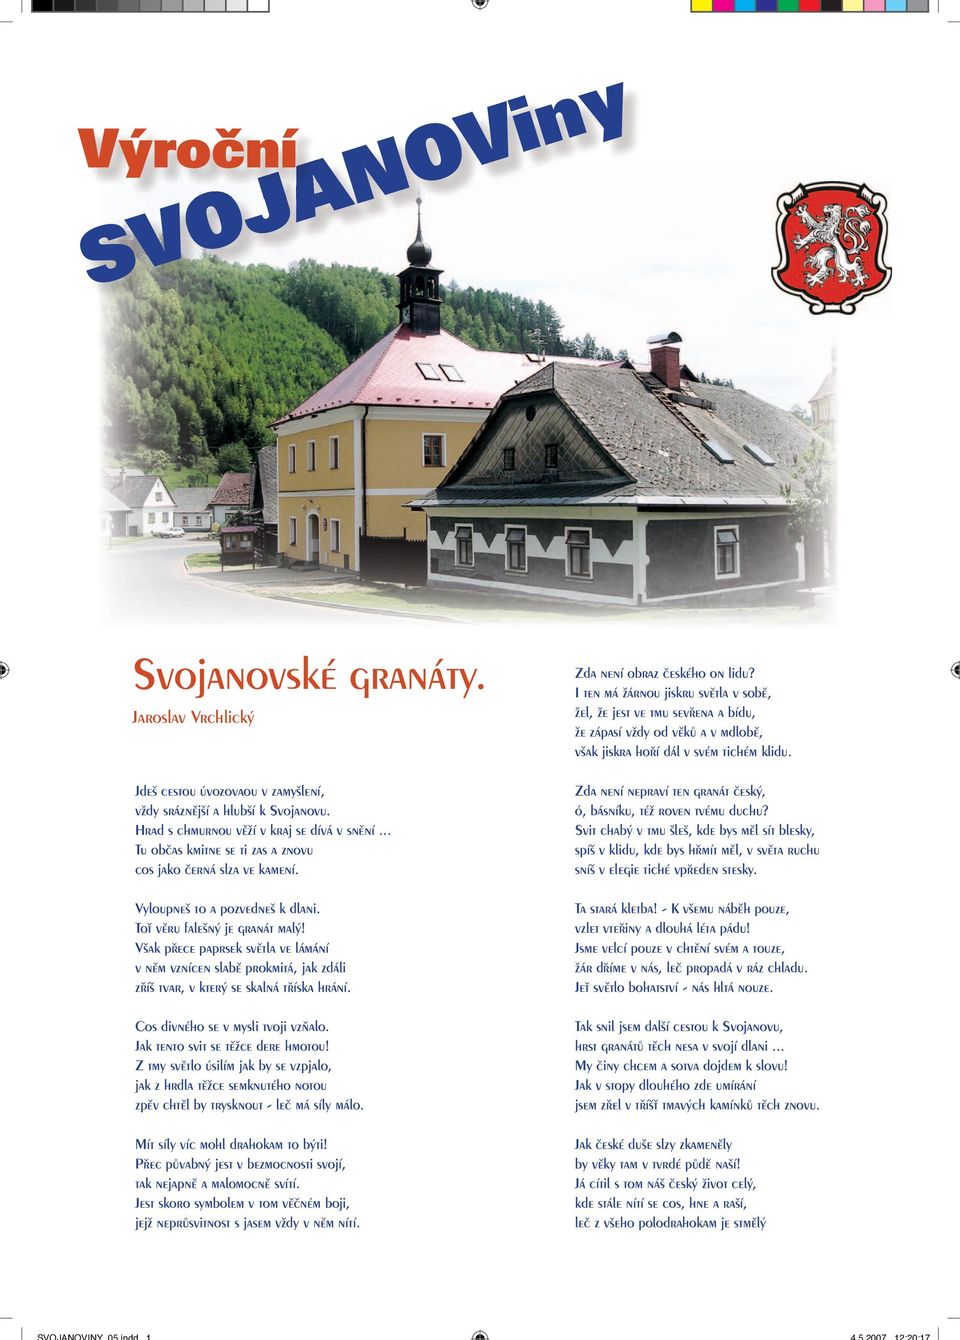 SVOJANOViny. Výroční. Svojanovské granáty. Jaroslav Vrchlický - PDF Free  Download